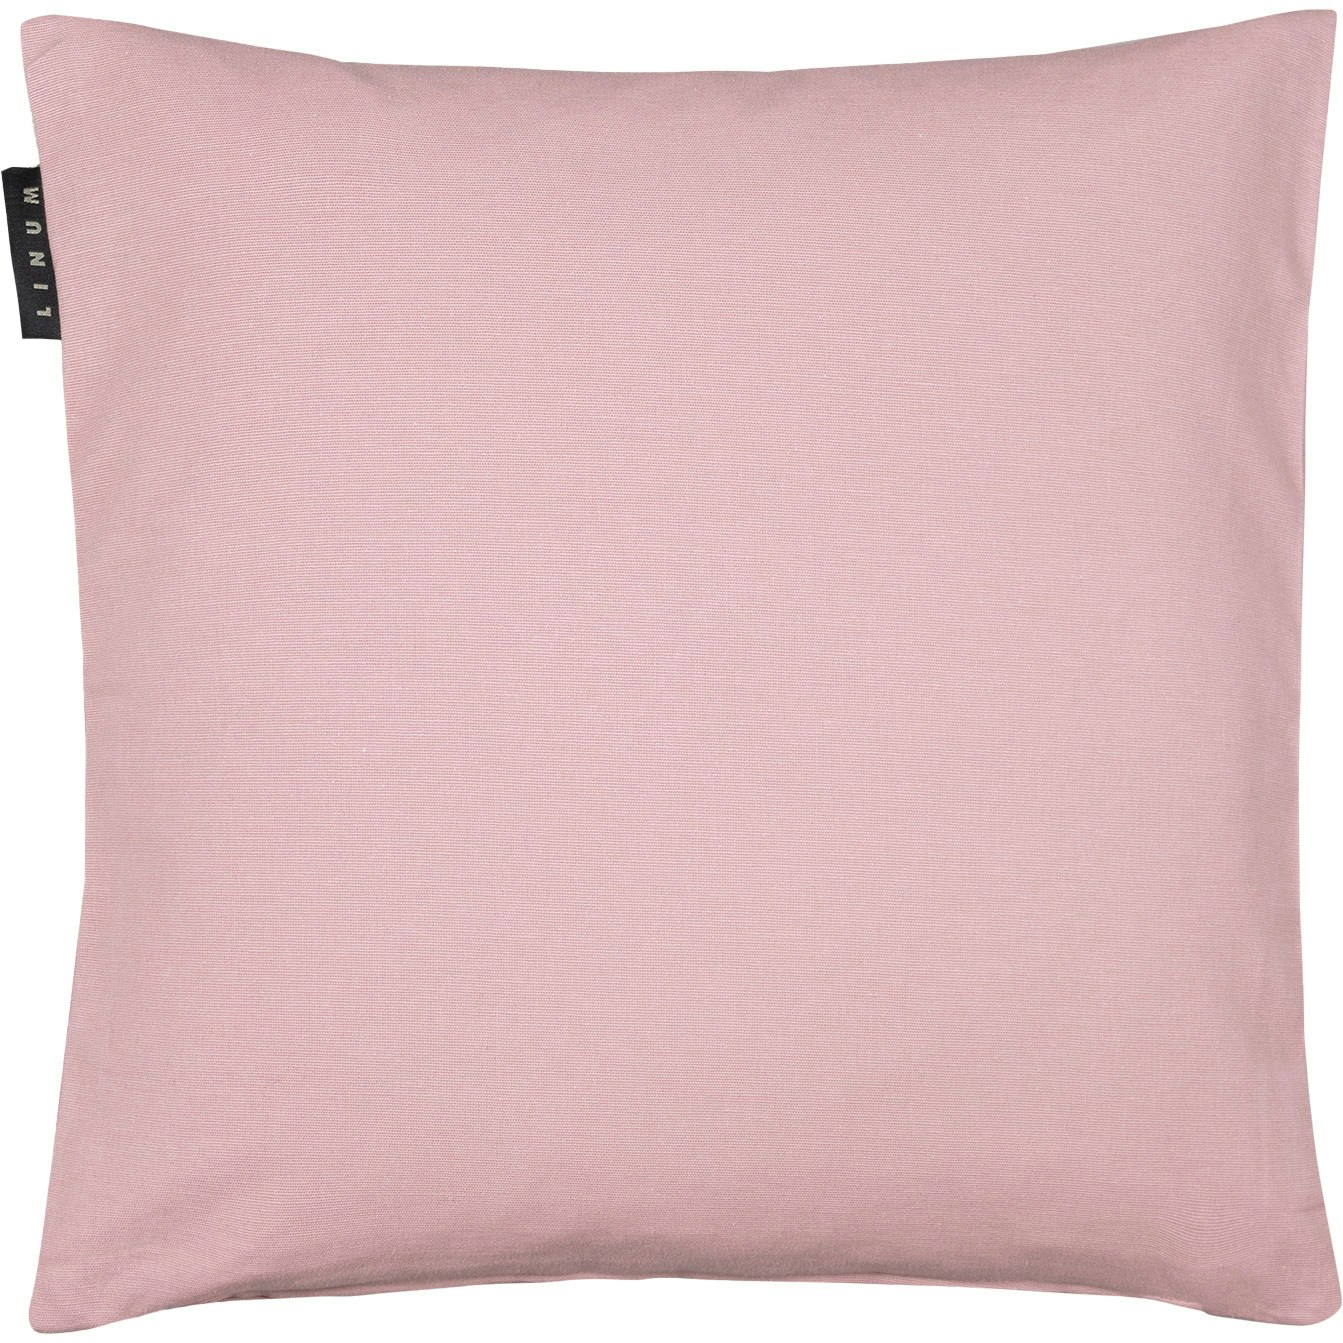 Annabelle Tyynynpäällinen 40x40 cm, Dusty Pink